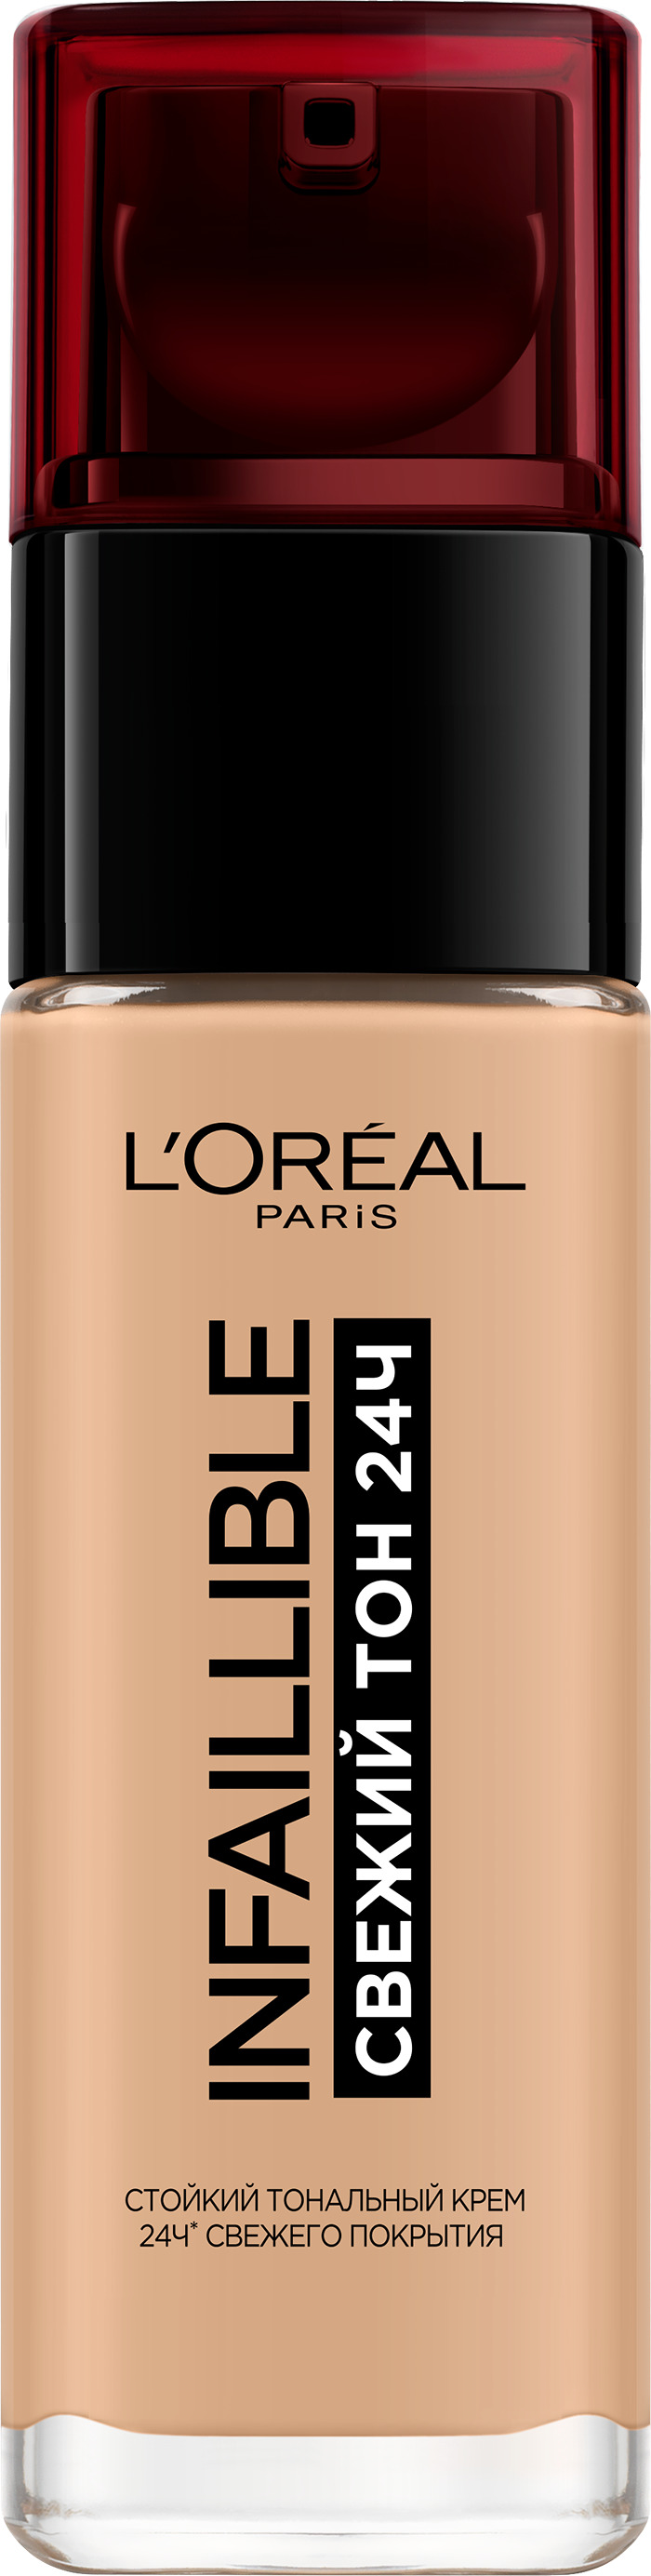 Тональный крем L'Oreal Paris Infaillible стойкий, матирующий тон 200 тональный крем l oreal alliance perfect тон n1 5 linen